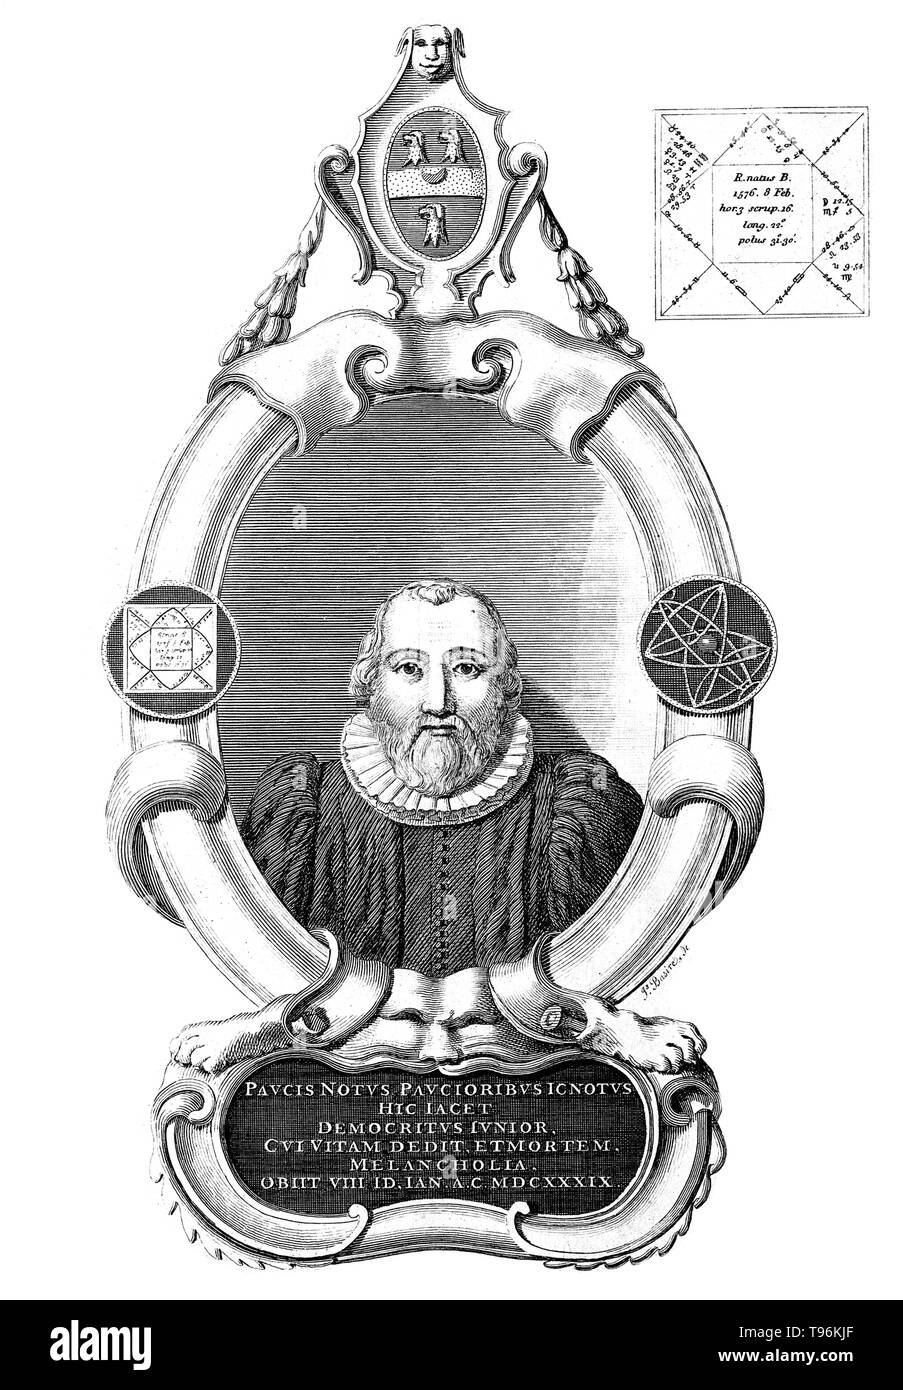 Robert Burton (8 février 1577 - 25 janvier 1640) était un érudit et auteur. Il a étudié un grand nombre de sujets divers, dont un grand nombre a informé l'étude de la mélancolie, pour lequel il est surtout célèbre. En 1621, il publie l'anatomie de la mélancolie. Bien que présenté comme un texte médical, de l'anatomie de la mélancolie est autant un travail de littérature, comme c'est un texte scientifique ou philosophique, et Burton aborde bien plus que son sujet. Banque D'Images